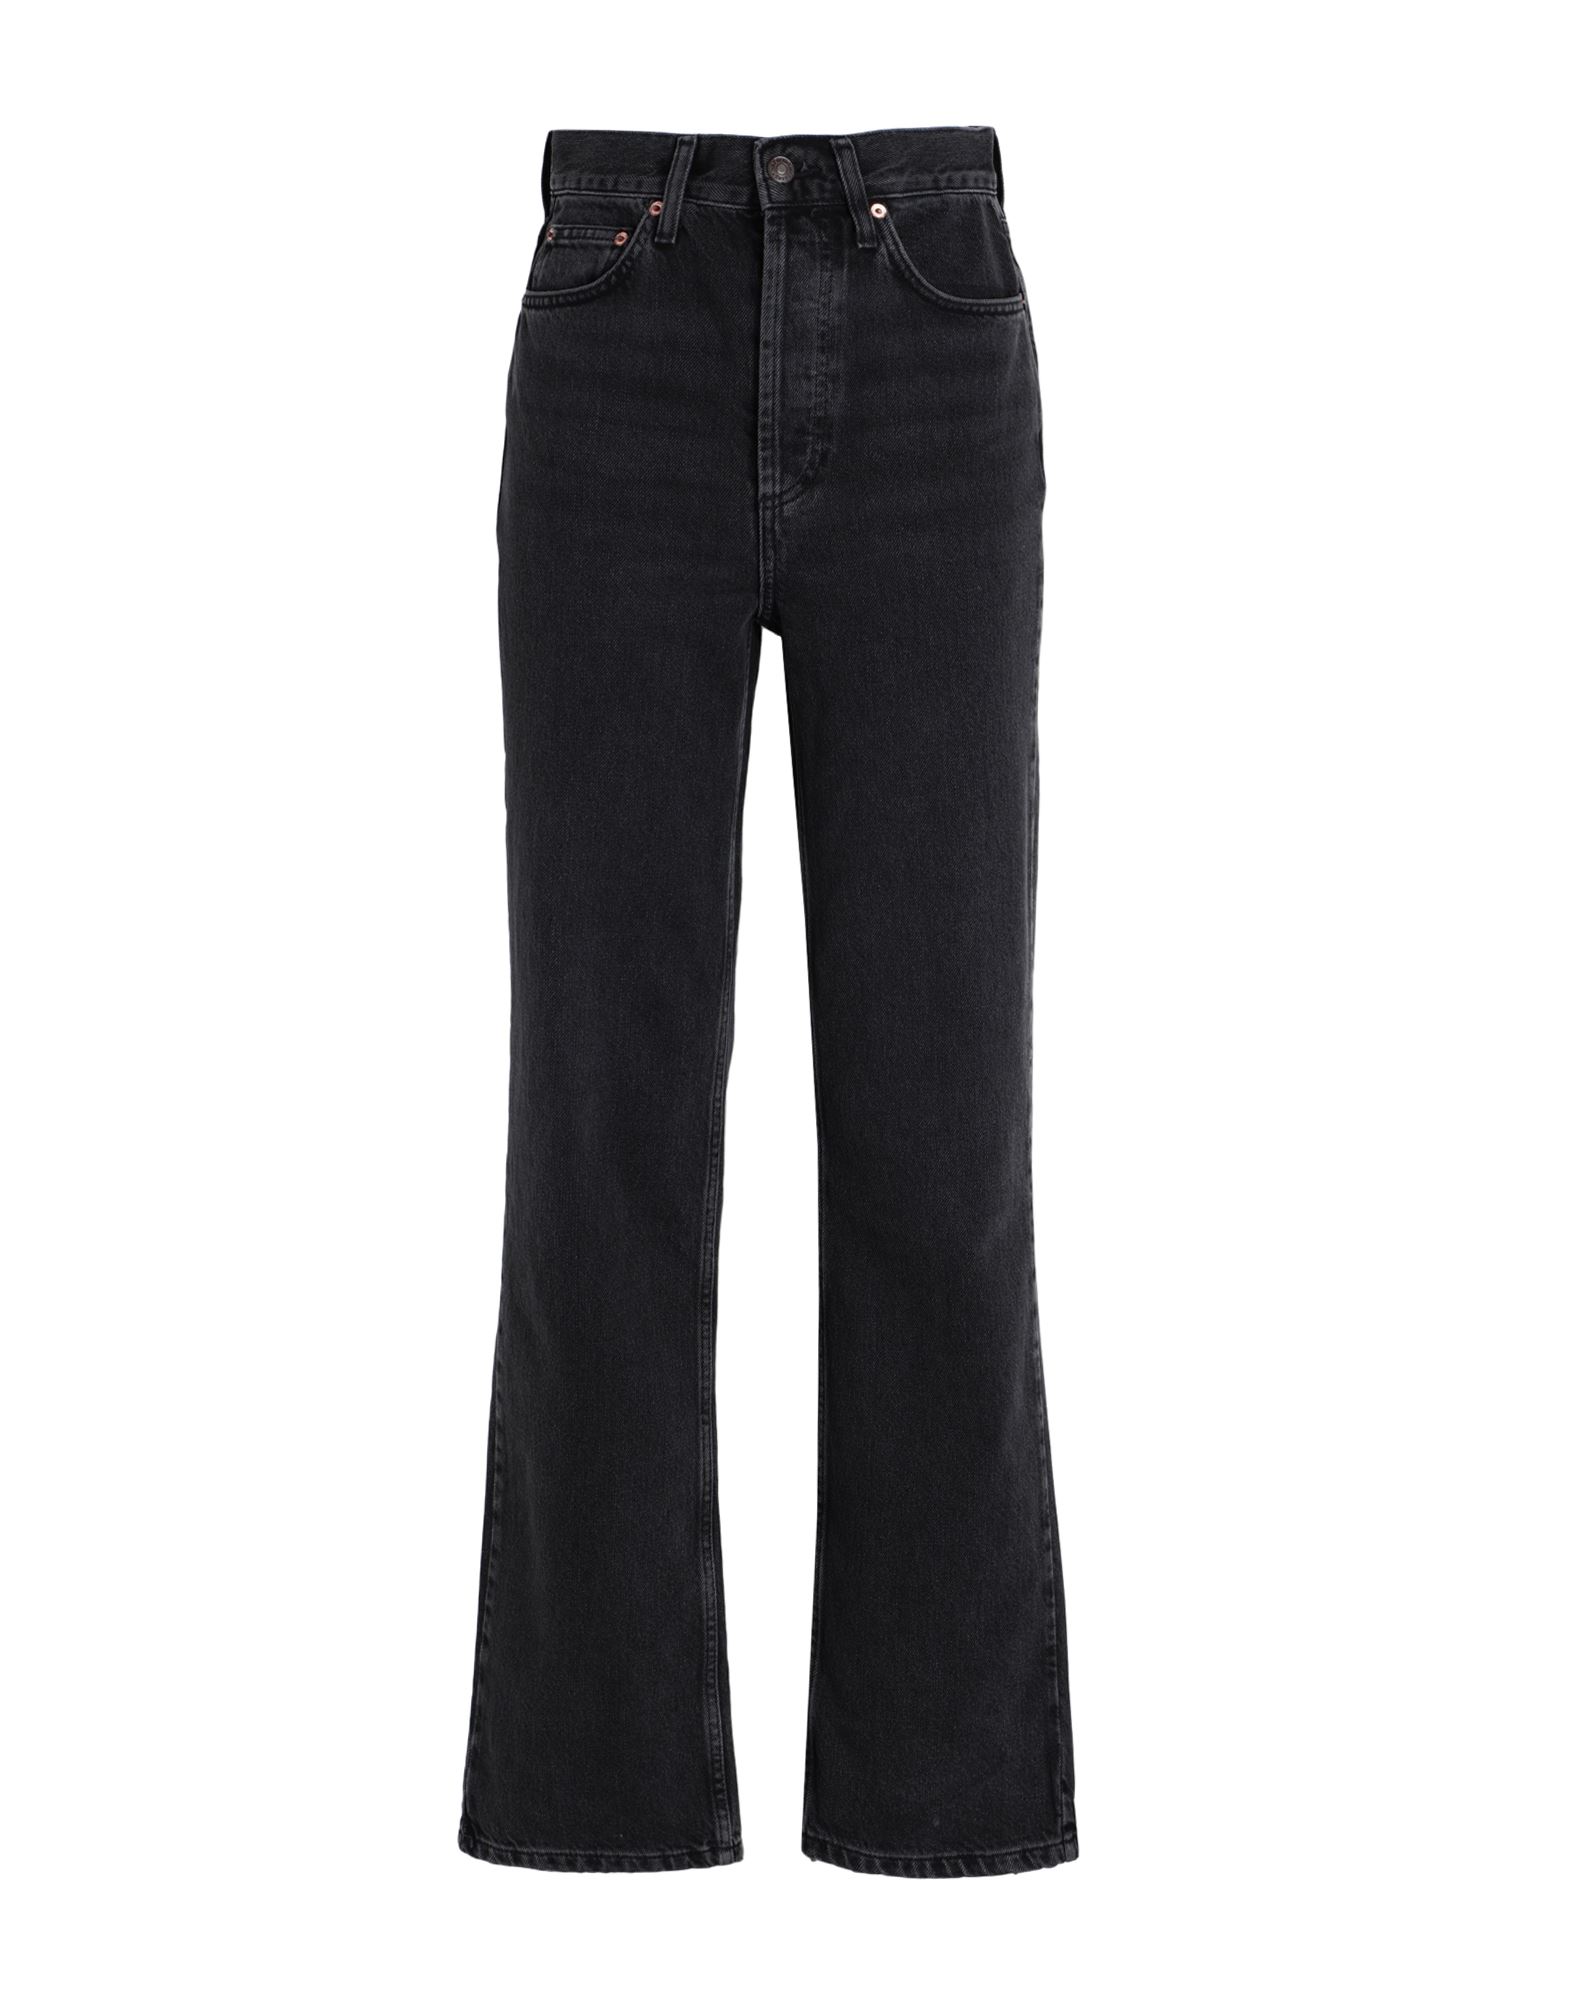 Shop Topshop Woman Jeans Black Size 30w-32l Cotton